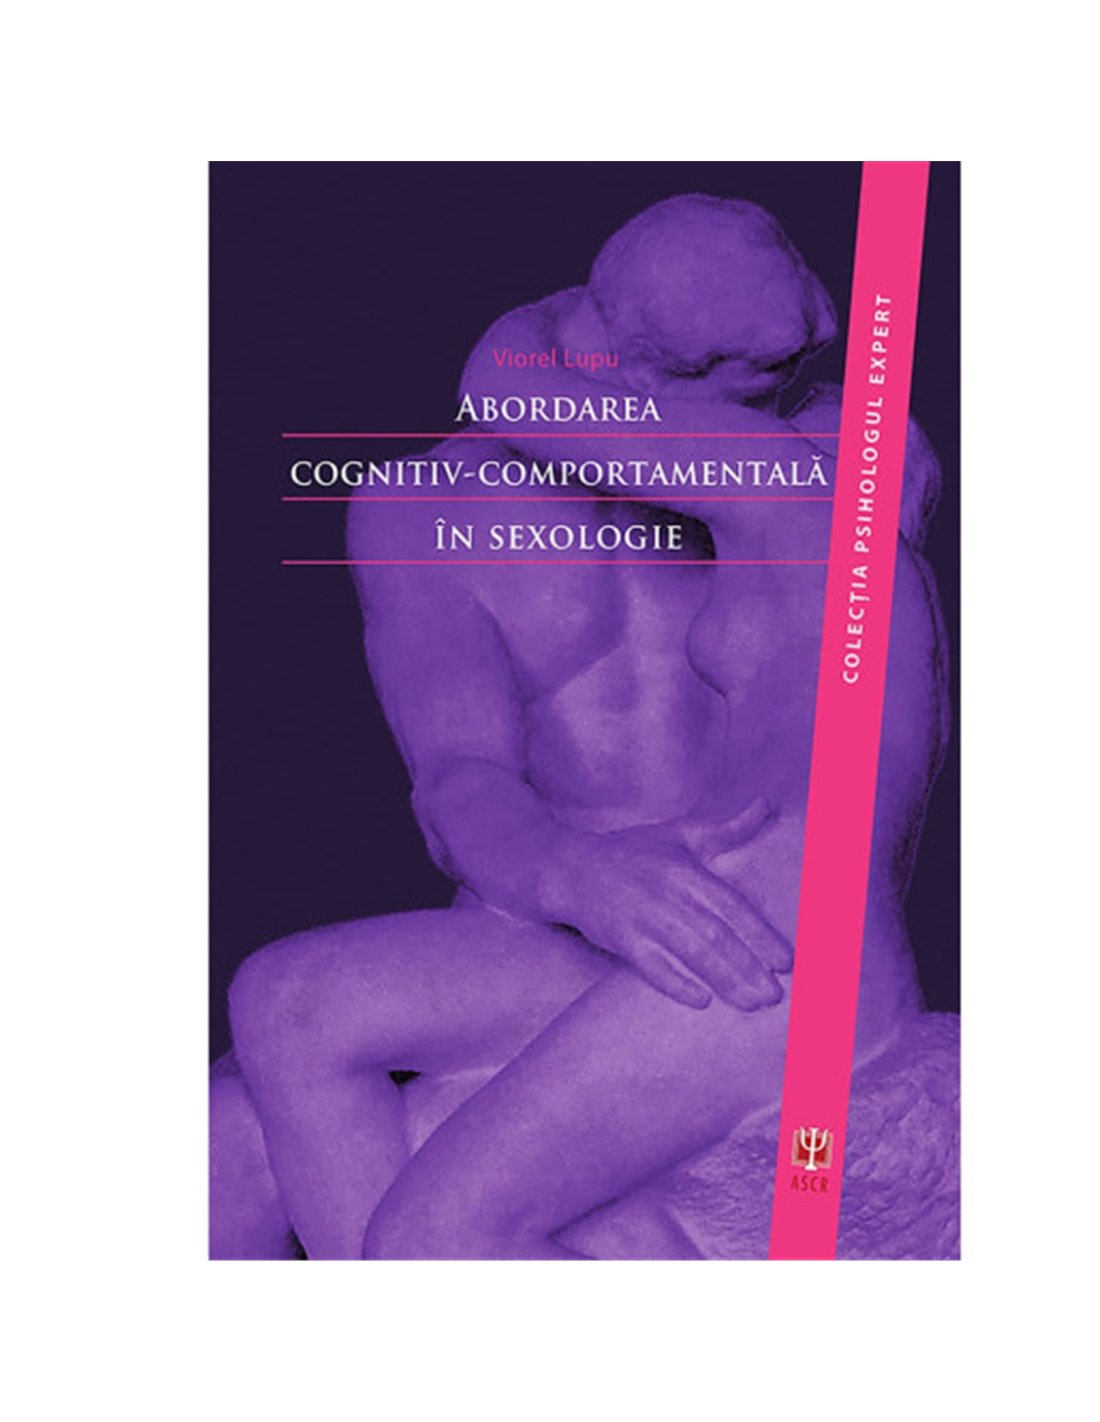 Abordarea cognitiv-comportamentală in sexologie - Viorel Lupu | Editura ASCR